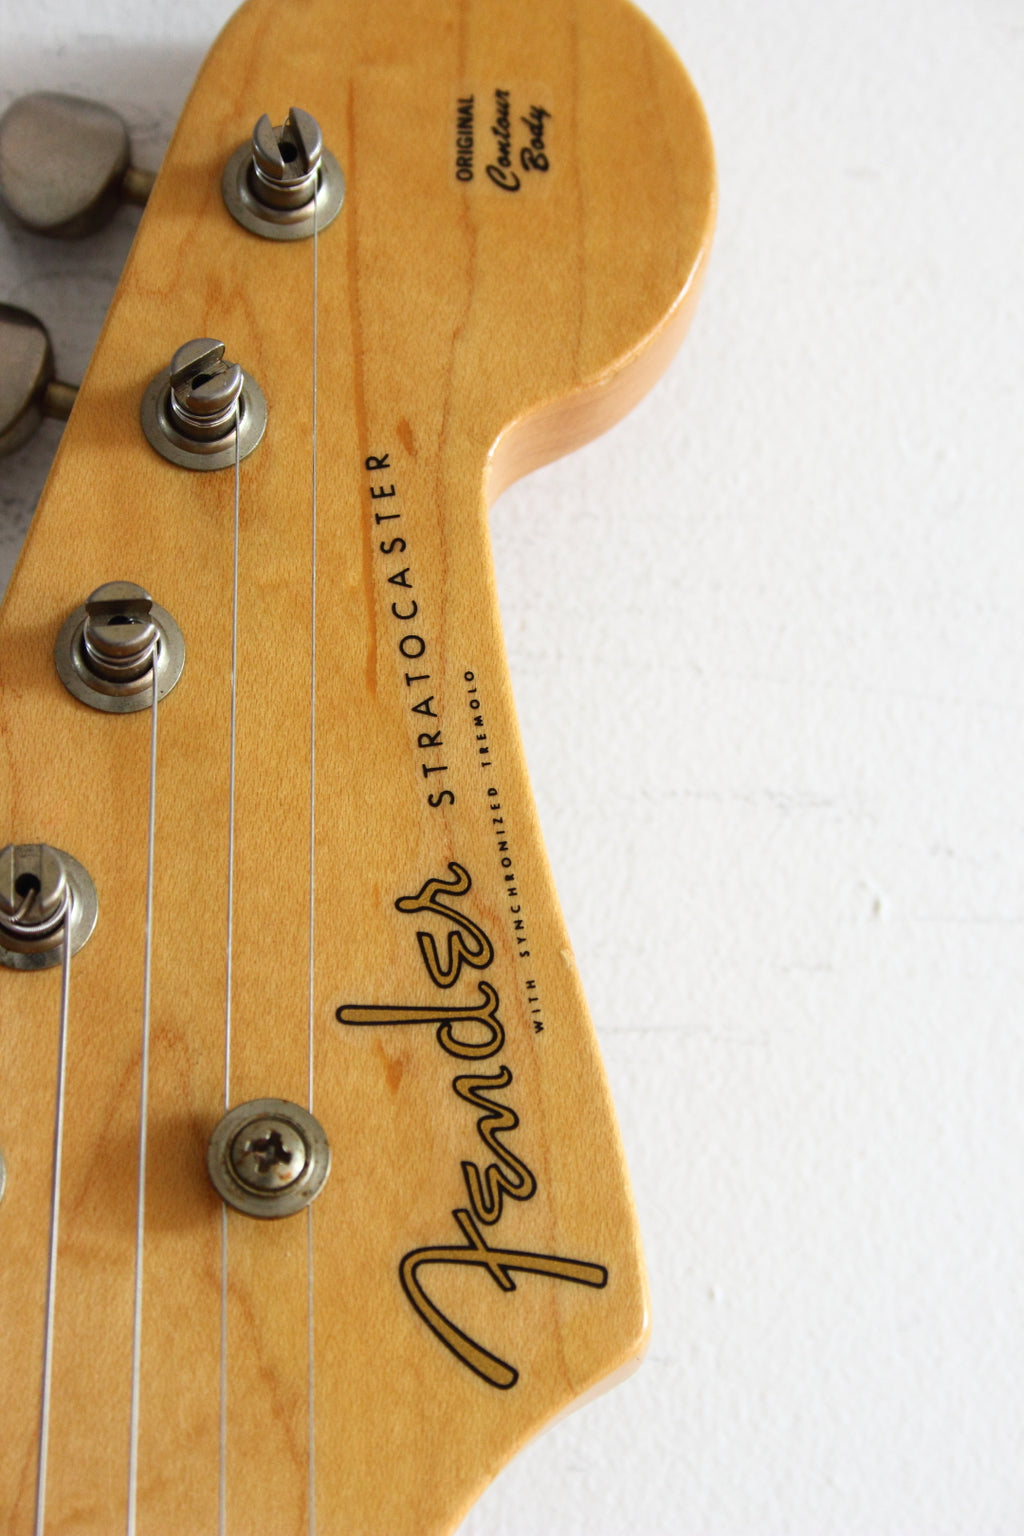 Fender '54 Reissue Stratocaster Modded Black 2002-04